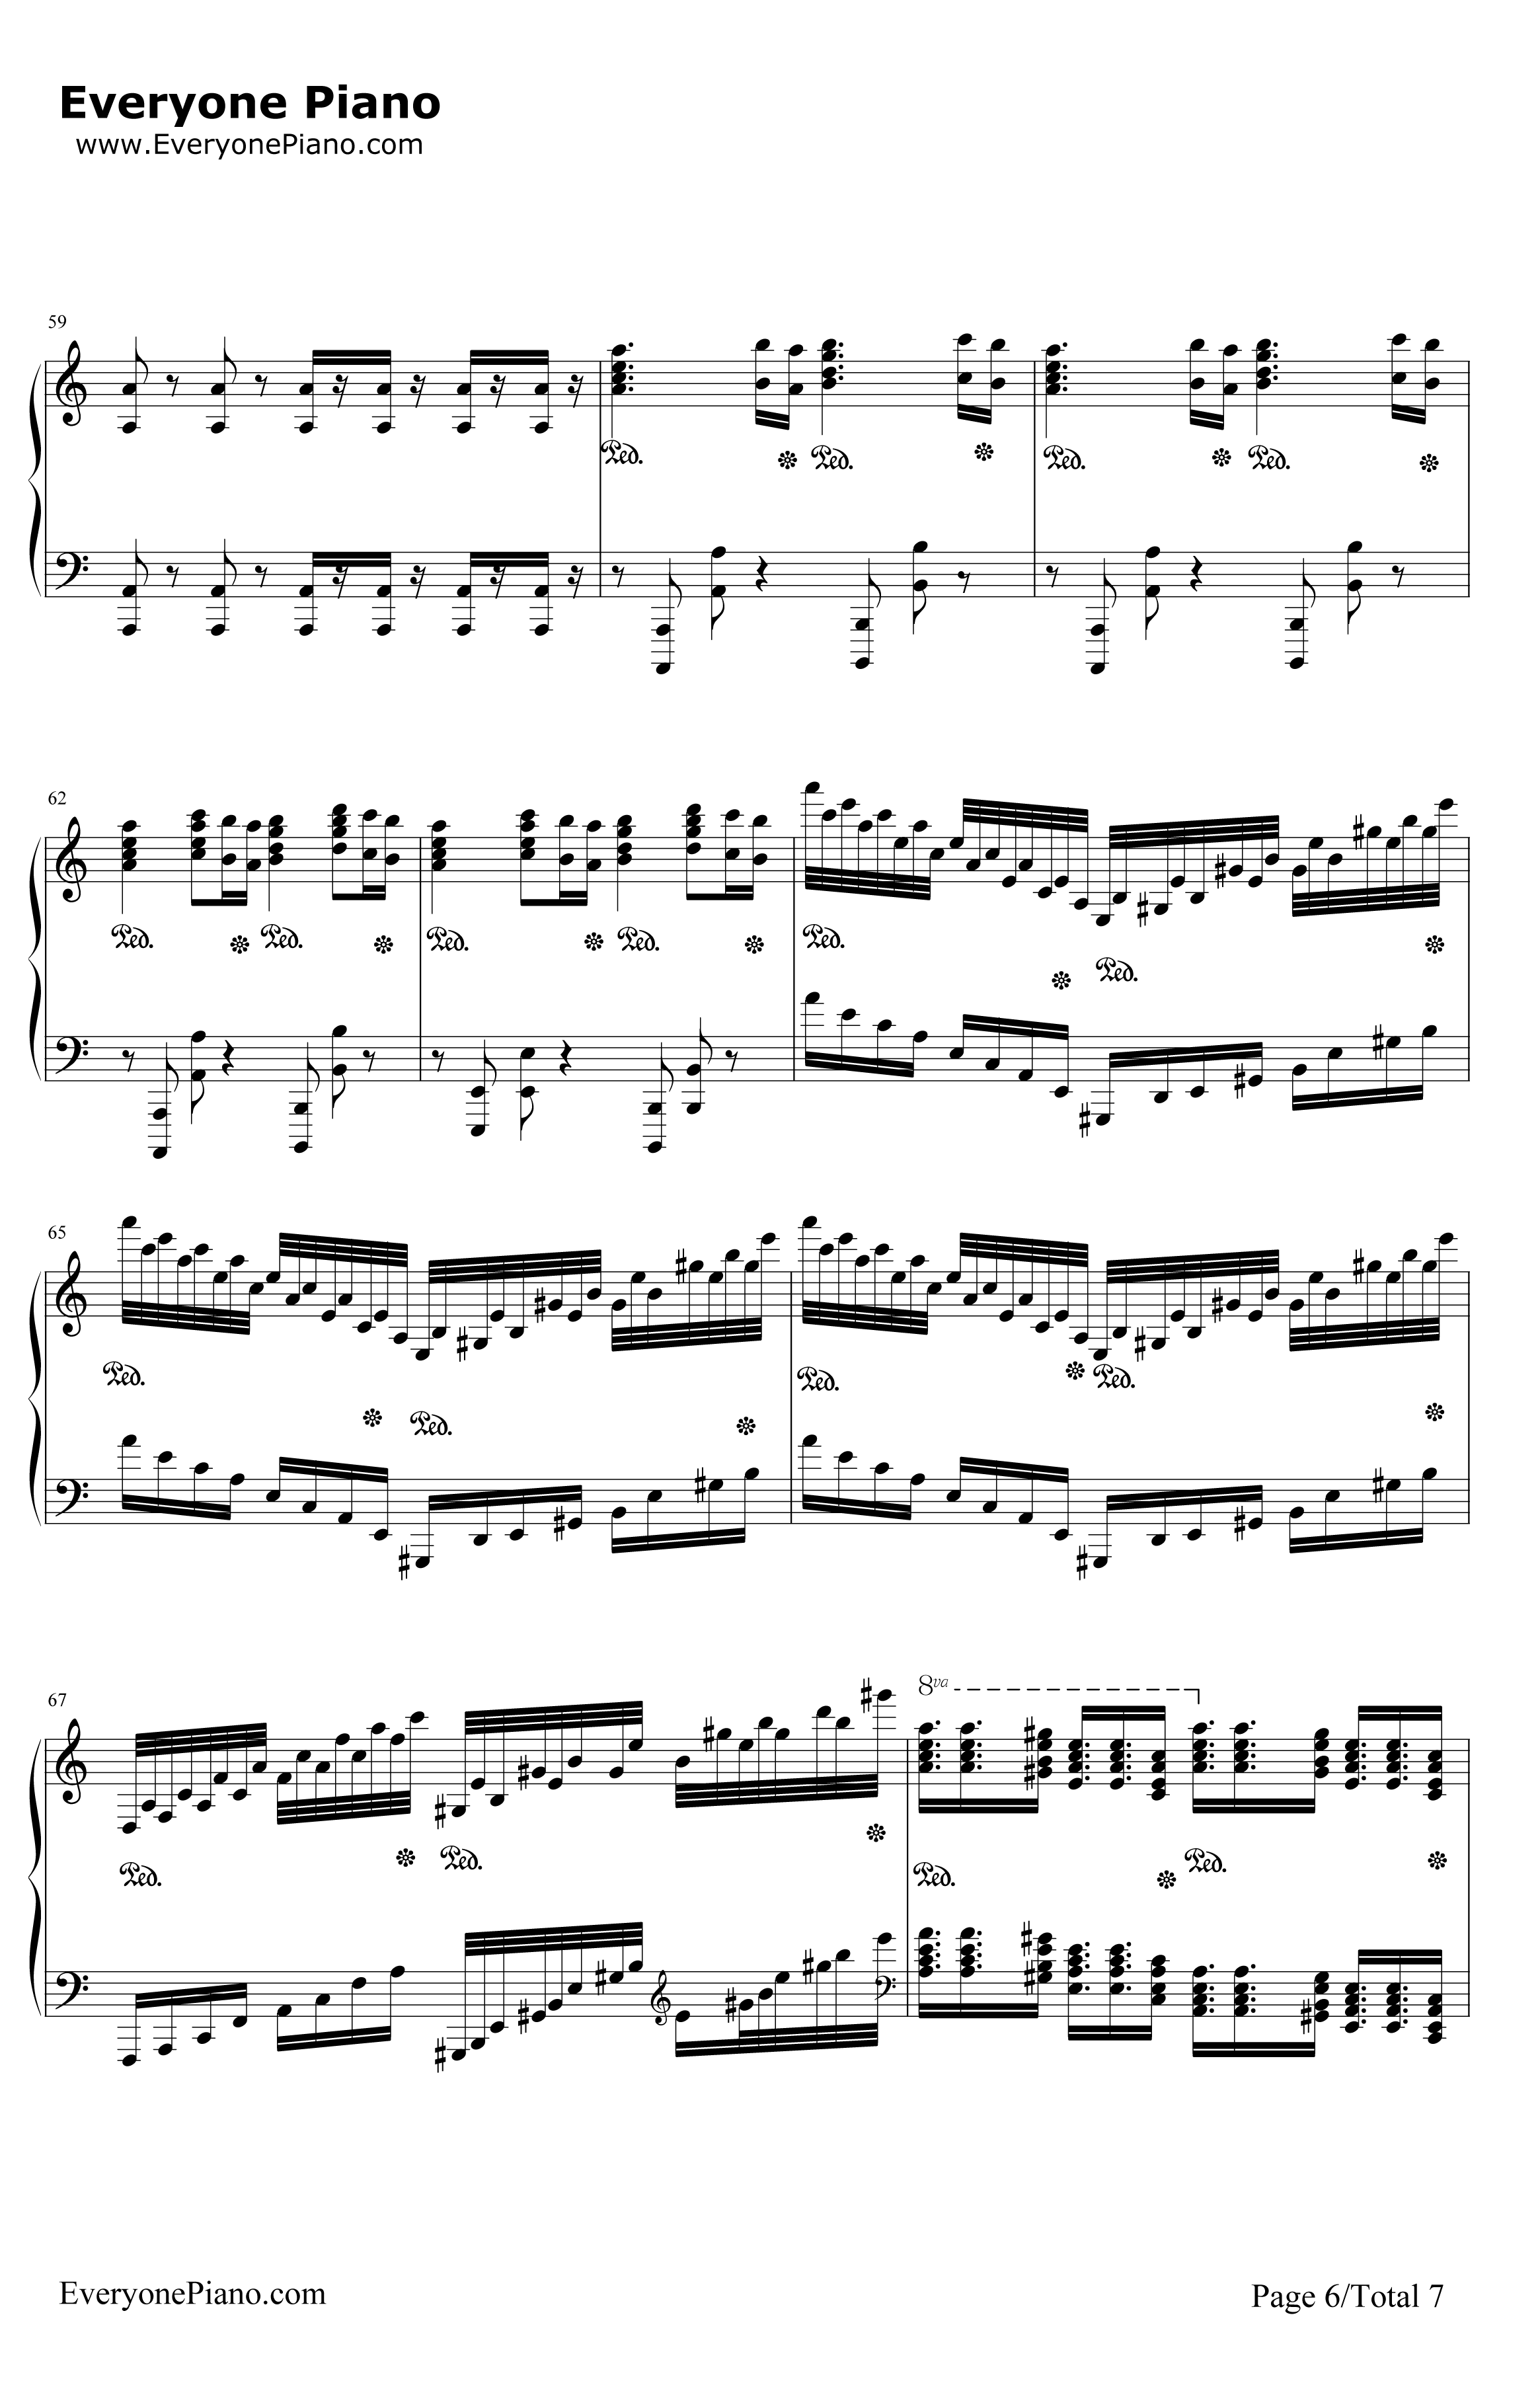 格里格钢琴变奏曲钢琴谱-马克西姆-格里格钢琴变奏曲6